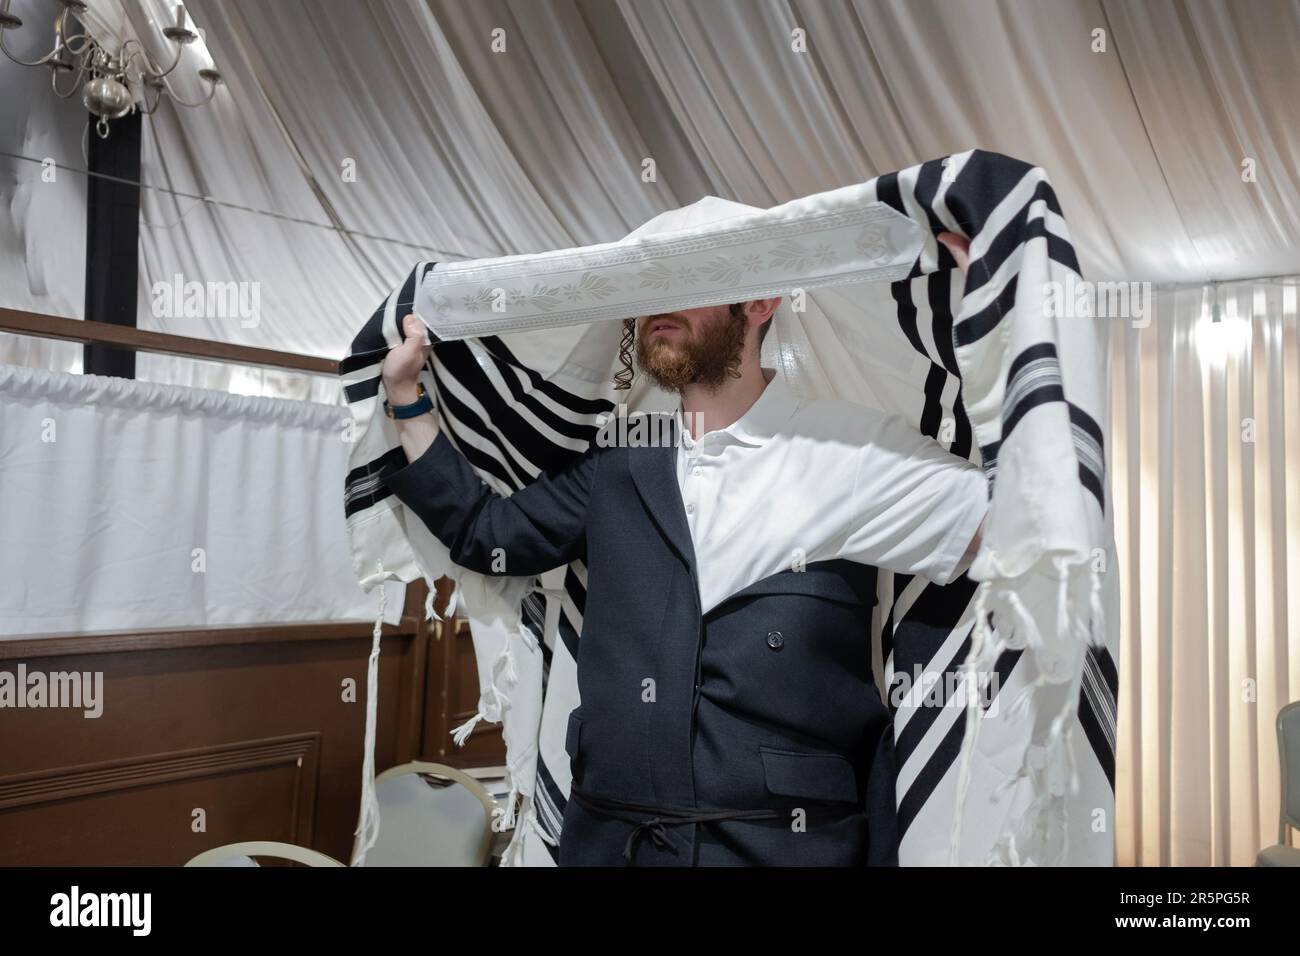 Prima dei servizi mattutini e mentre si mette su un suo tallis, un uomo ebraico ortodosso si impegna in un momento di contemplazione. In una sinagoga di Monsey, NY. Foto Stock